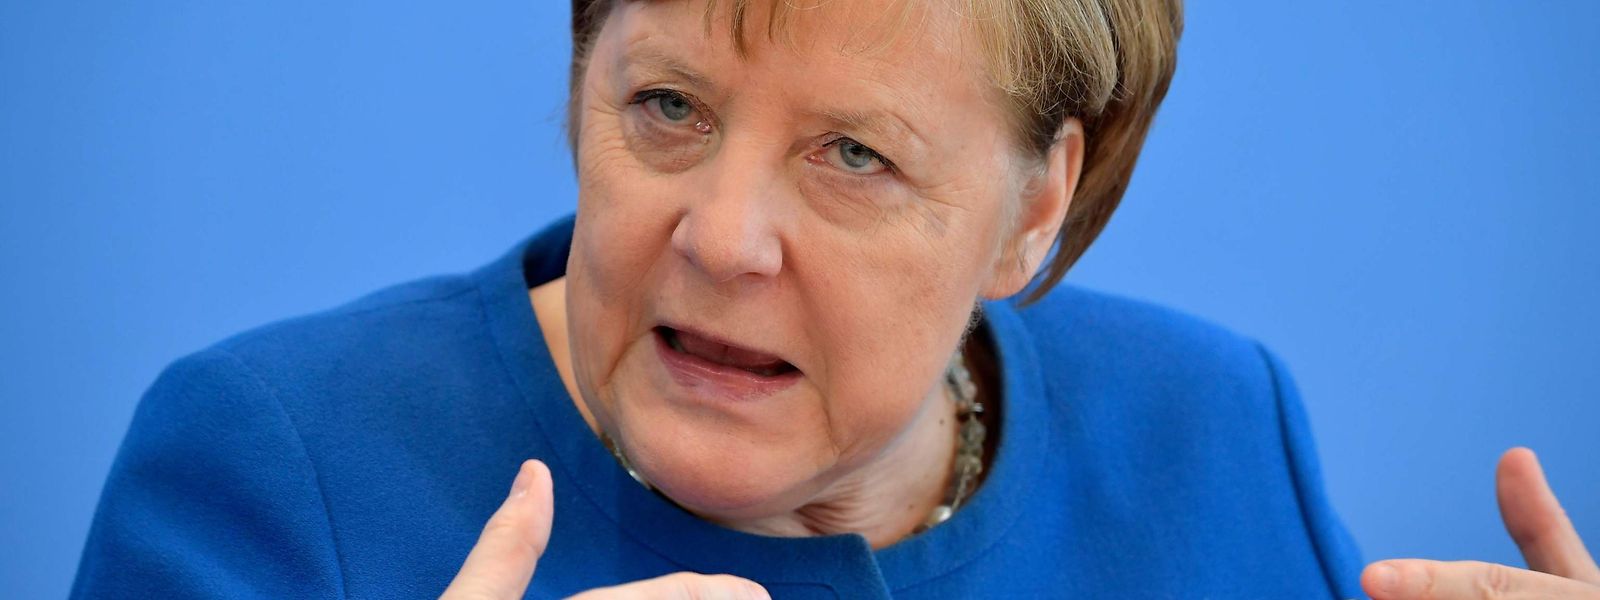 Angesichts der steigenden Zahl von Infektionen mit dem Corona-Virus hat die deutsche Kanzlerin Angela Merkel alle Bürger zur Solidarität aufgerufen. 